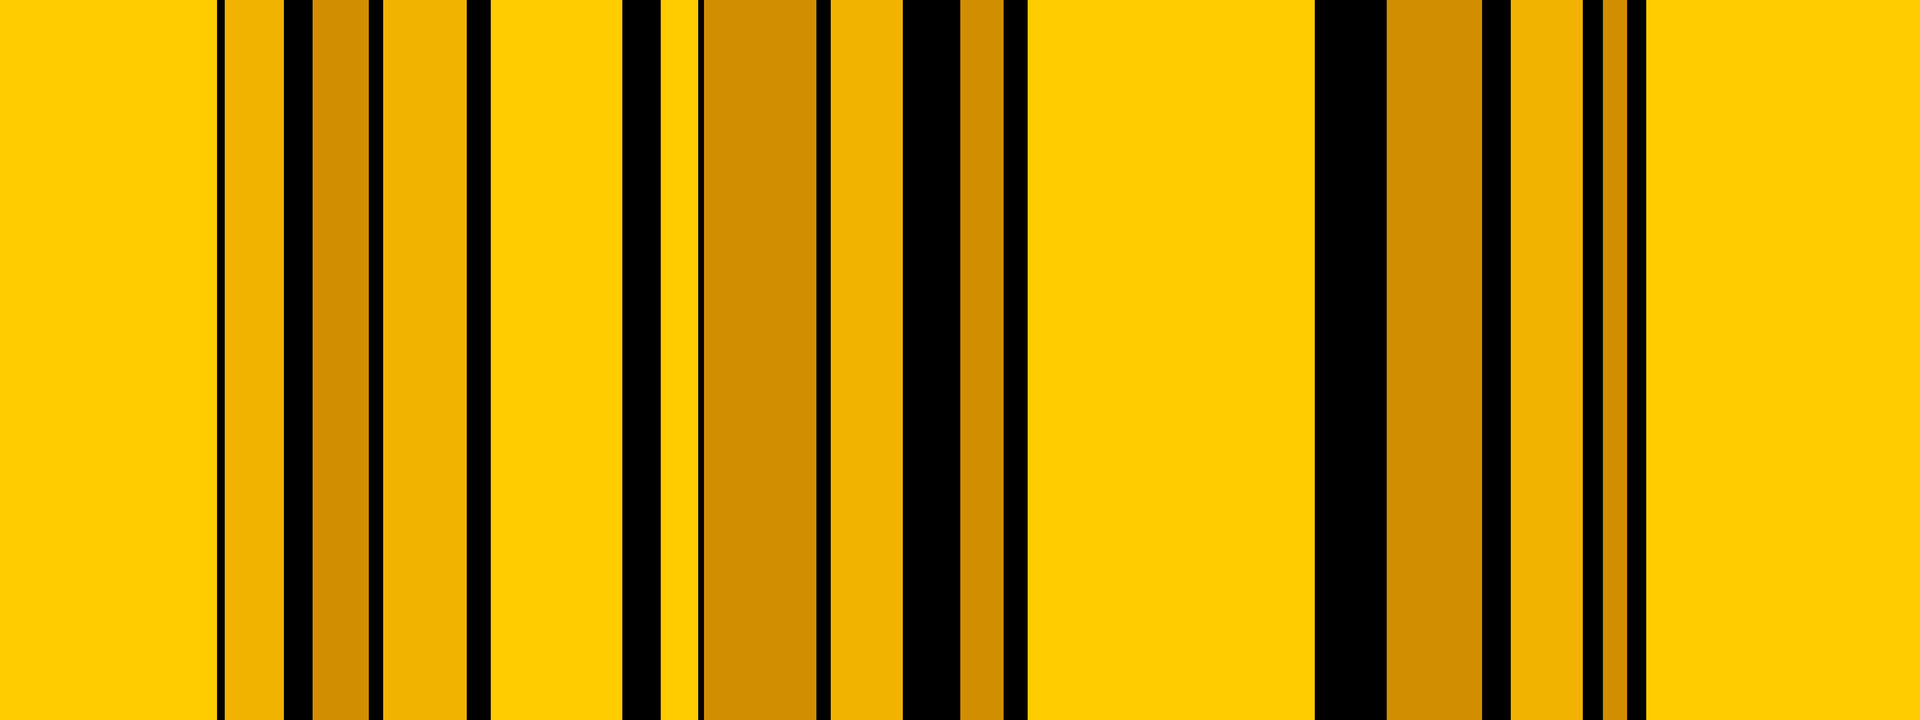 Vertikale Streifen in verschiedenen Gelbtönen. Unterbrochen von unterschiedlich breiten schwarzen Linien.